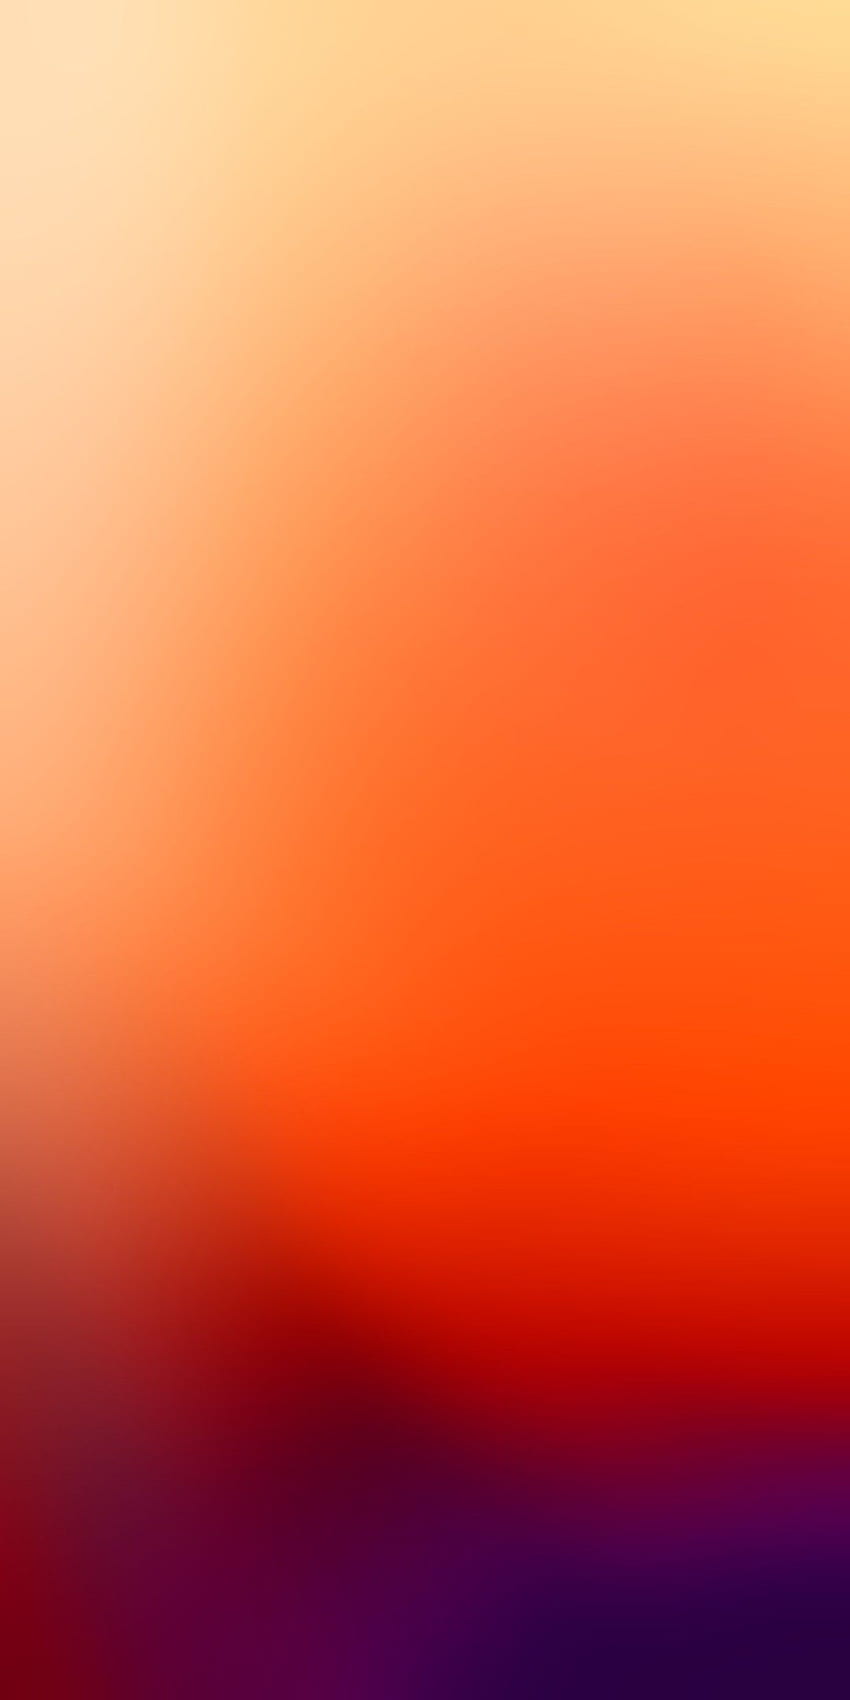 Kết hợp sự pha trộn giữa màu cam và xanh dương tạo nên bức ảnh nền chuyển màu cam xanh dương vô cùng đẹp mắt và dễ thương. Hãy cùng xem và thưởng thức bức hình này thôi nào! Translation: The combination of orange and blue gradient in this background image creates a beautiful and adorable effect for your photo. Let\'s watch and enjoy this orange blue gradient background image together!